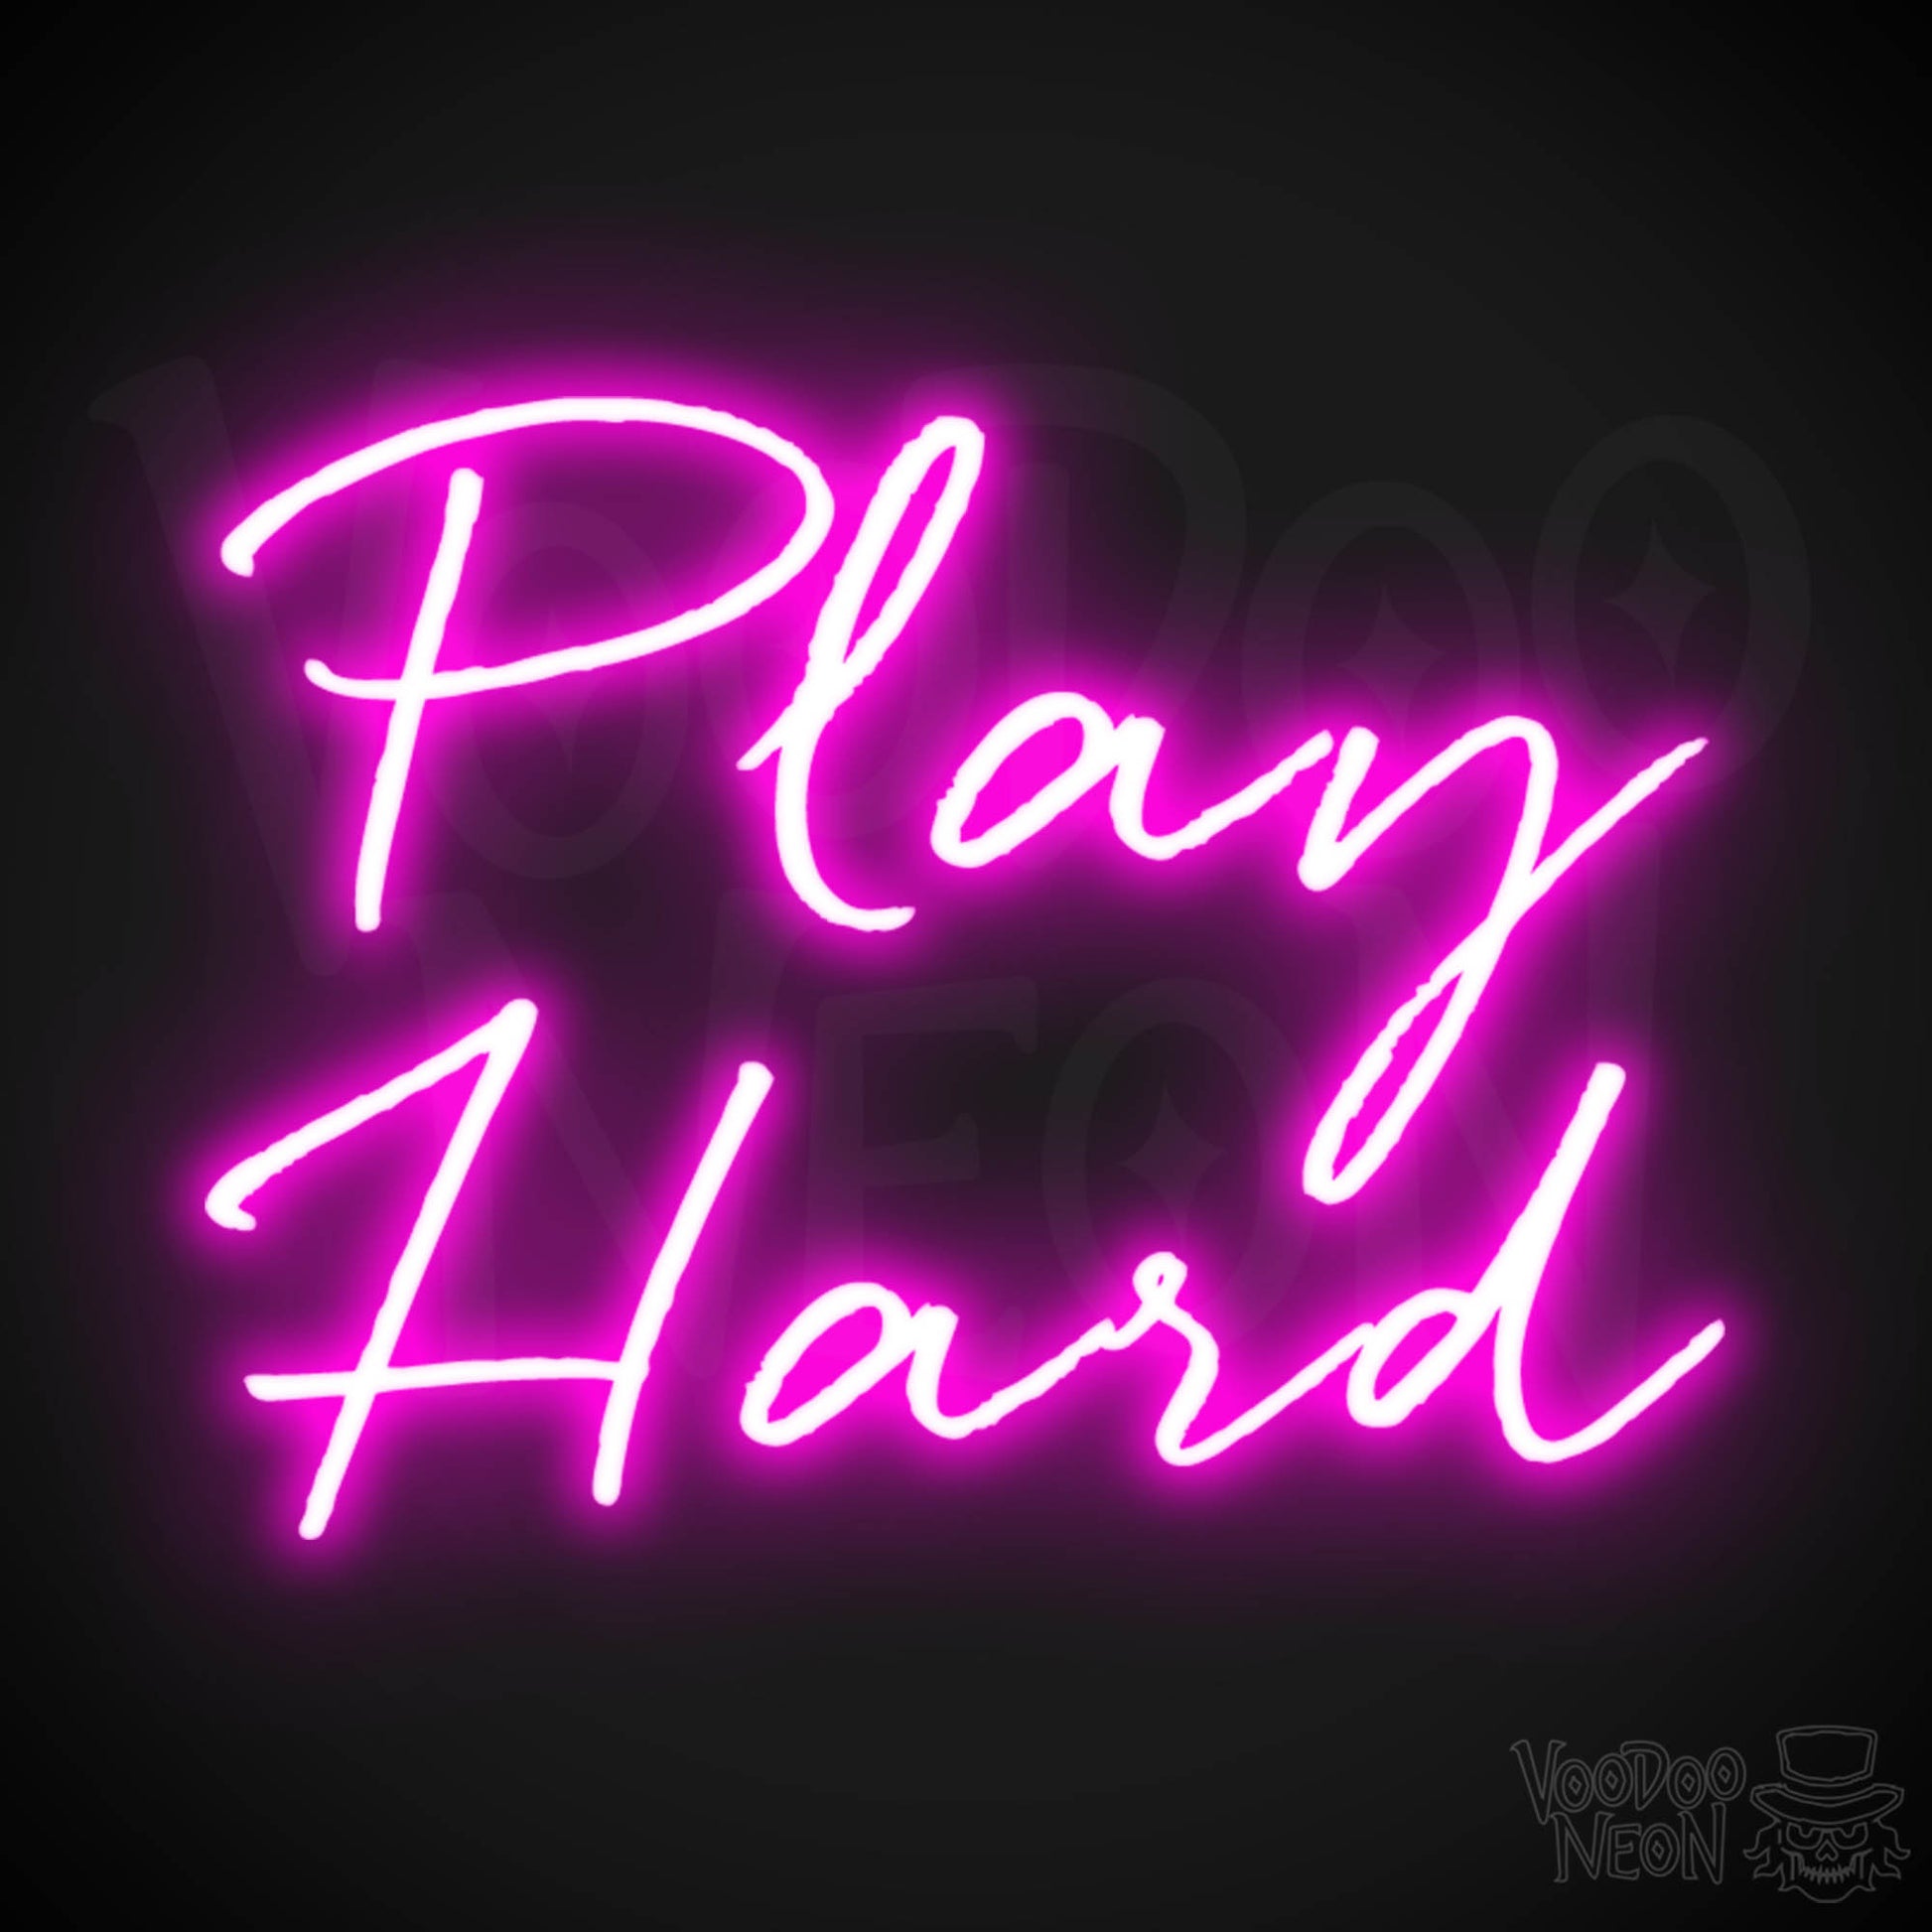 Play Hard Neon Sign - Neon Play Hard Sign - Play Hard LED Sign - Color Pink